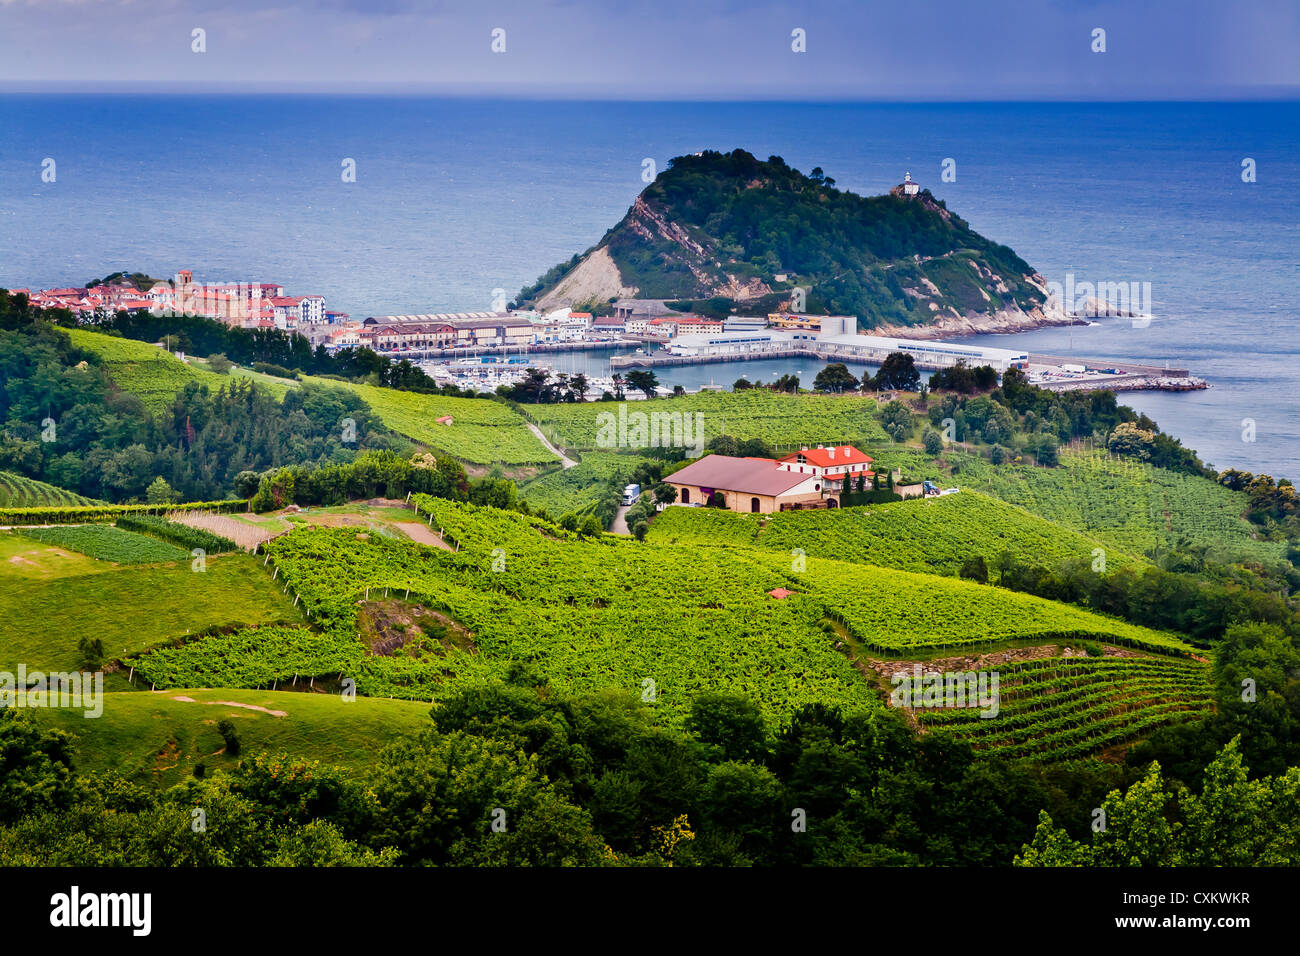 Village view and txakoli (white wine) crop on mountain hills. Getaria, Guipuzkoa. Basque Country, Spain. Stock Photo